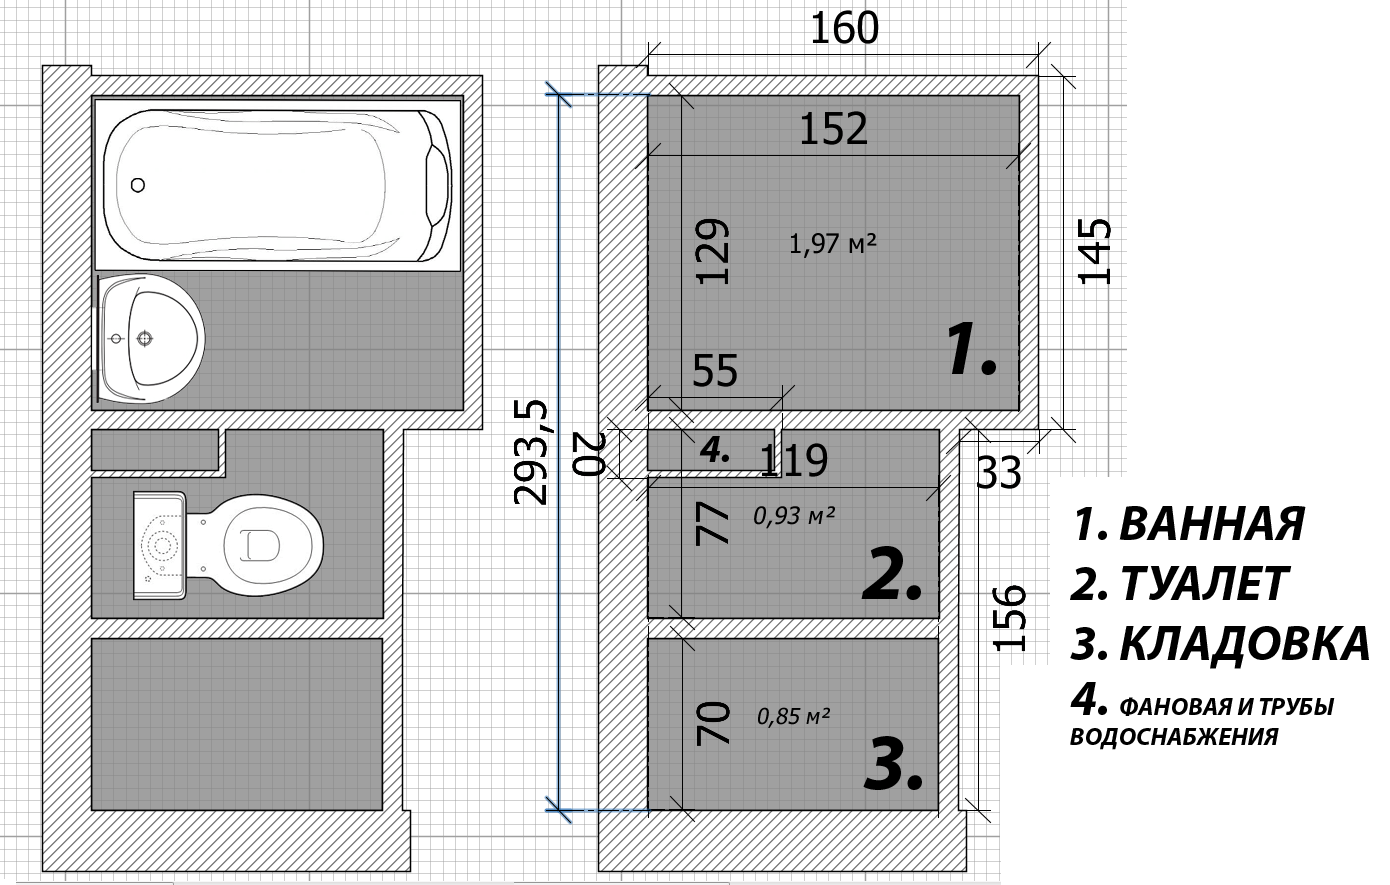 Размер ванной комнаты и ее планировка согласно нормам